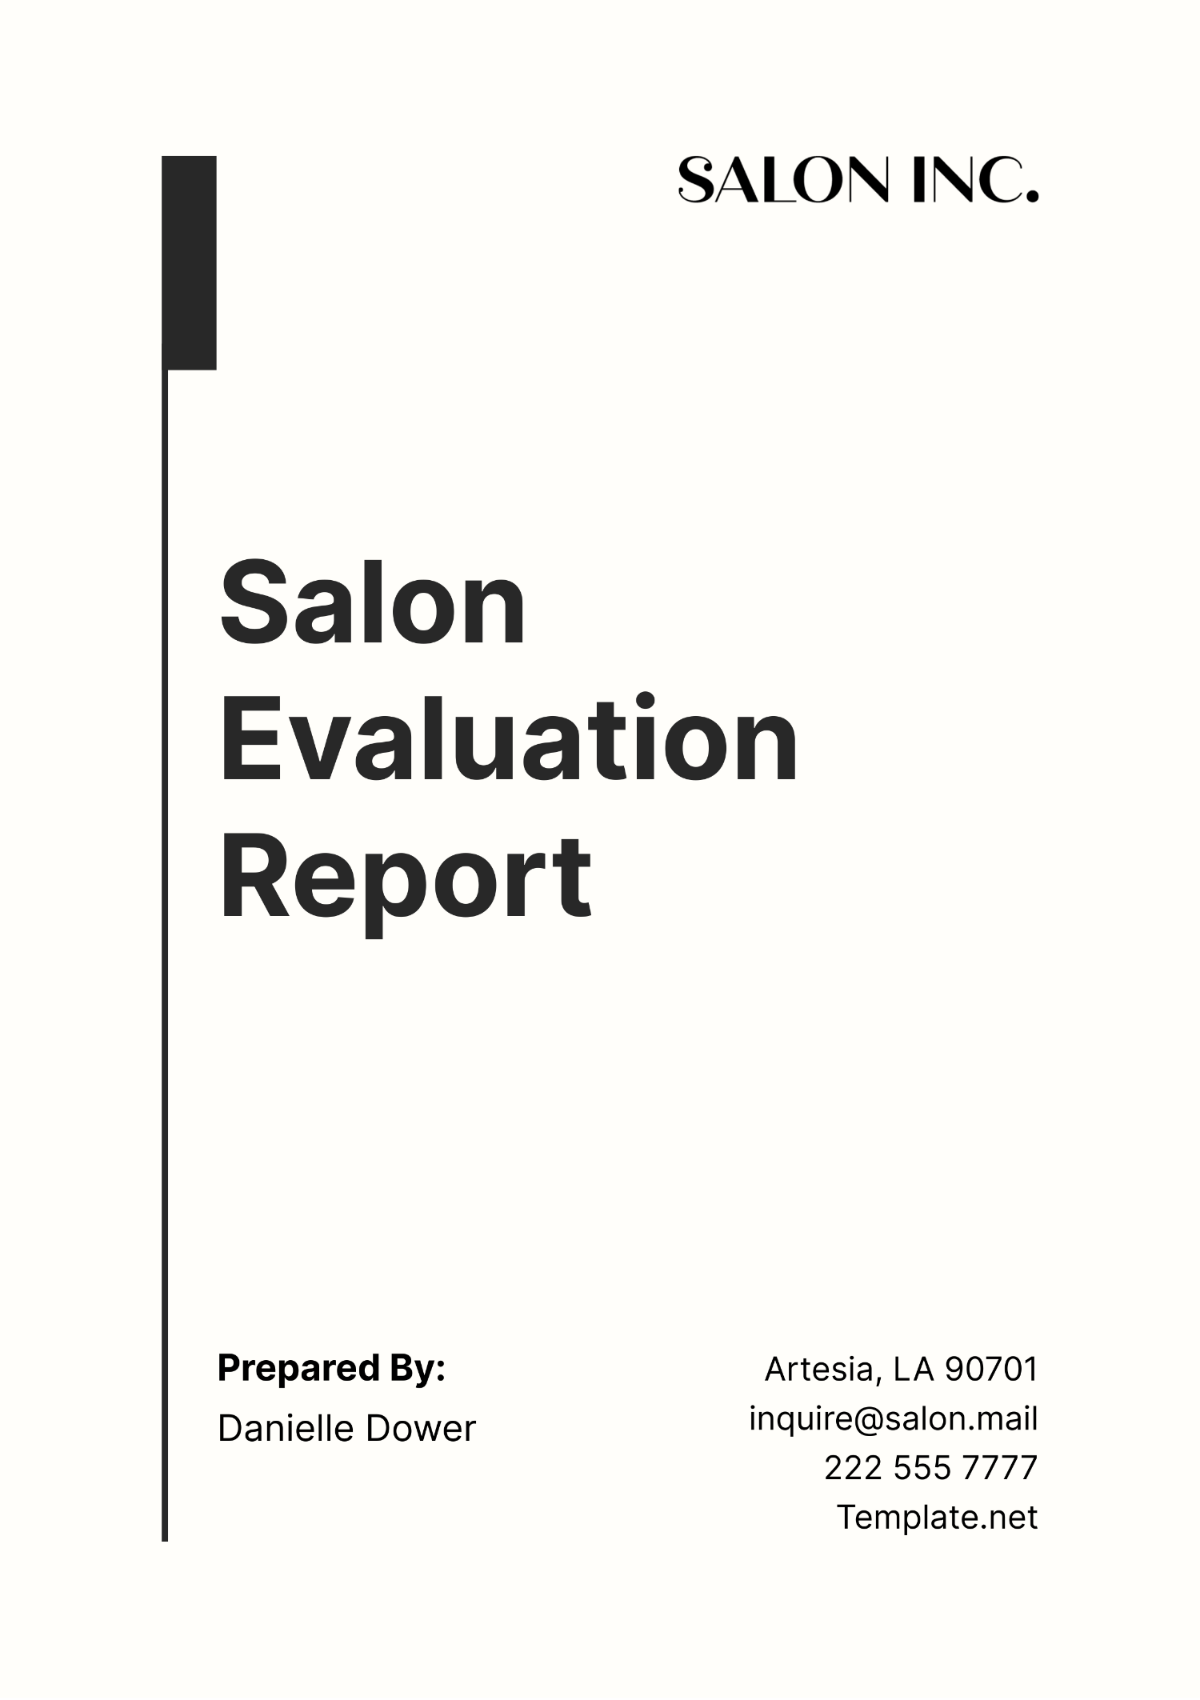 Salon Evaluation Report Template